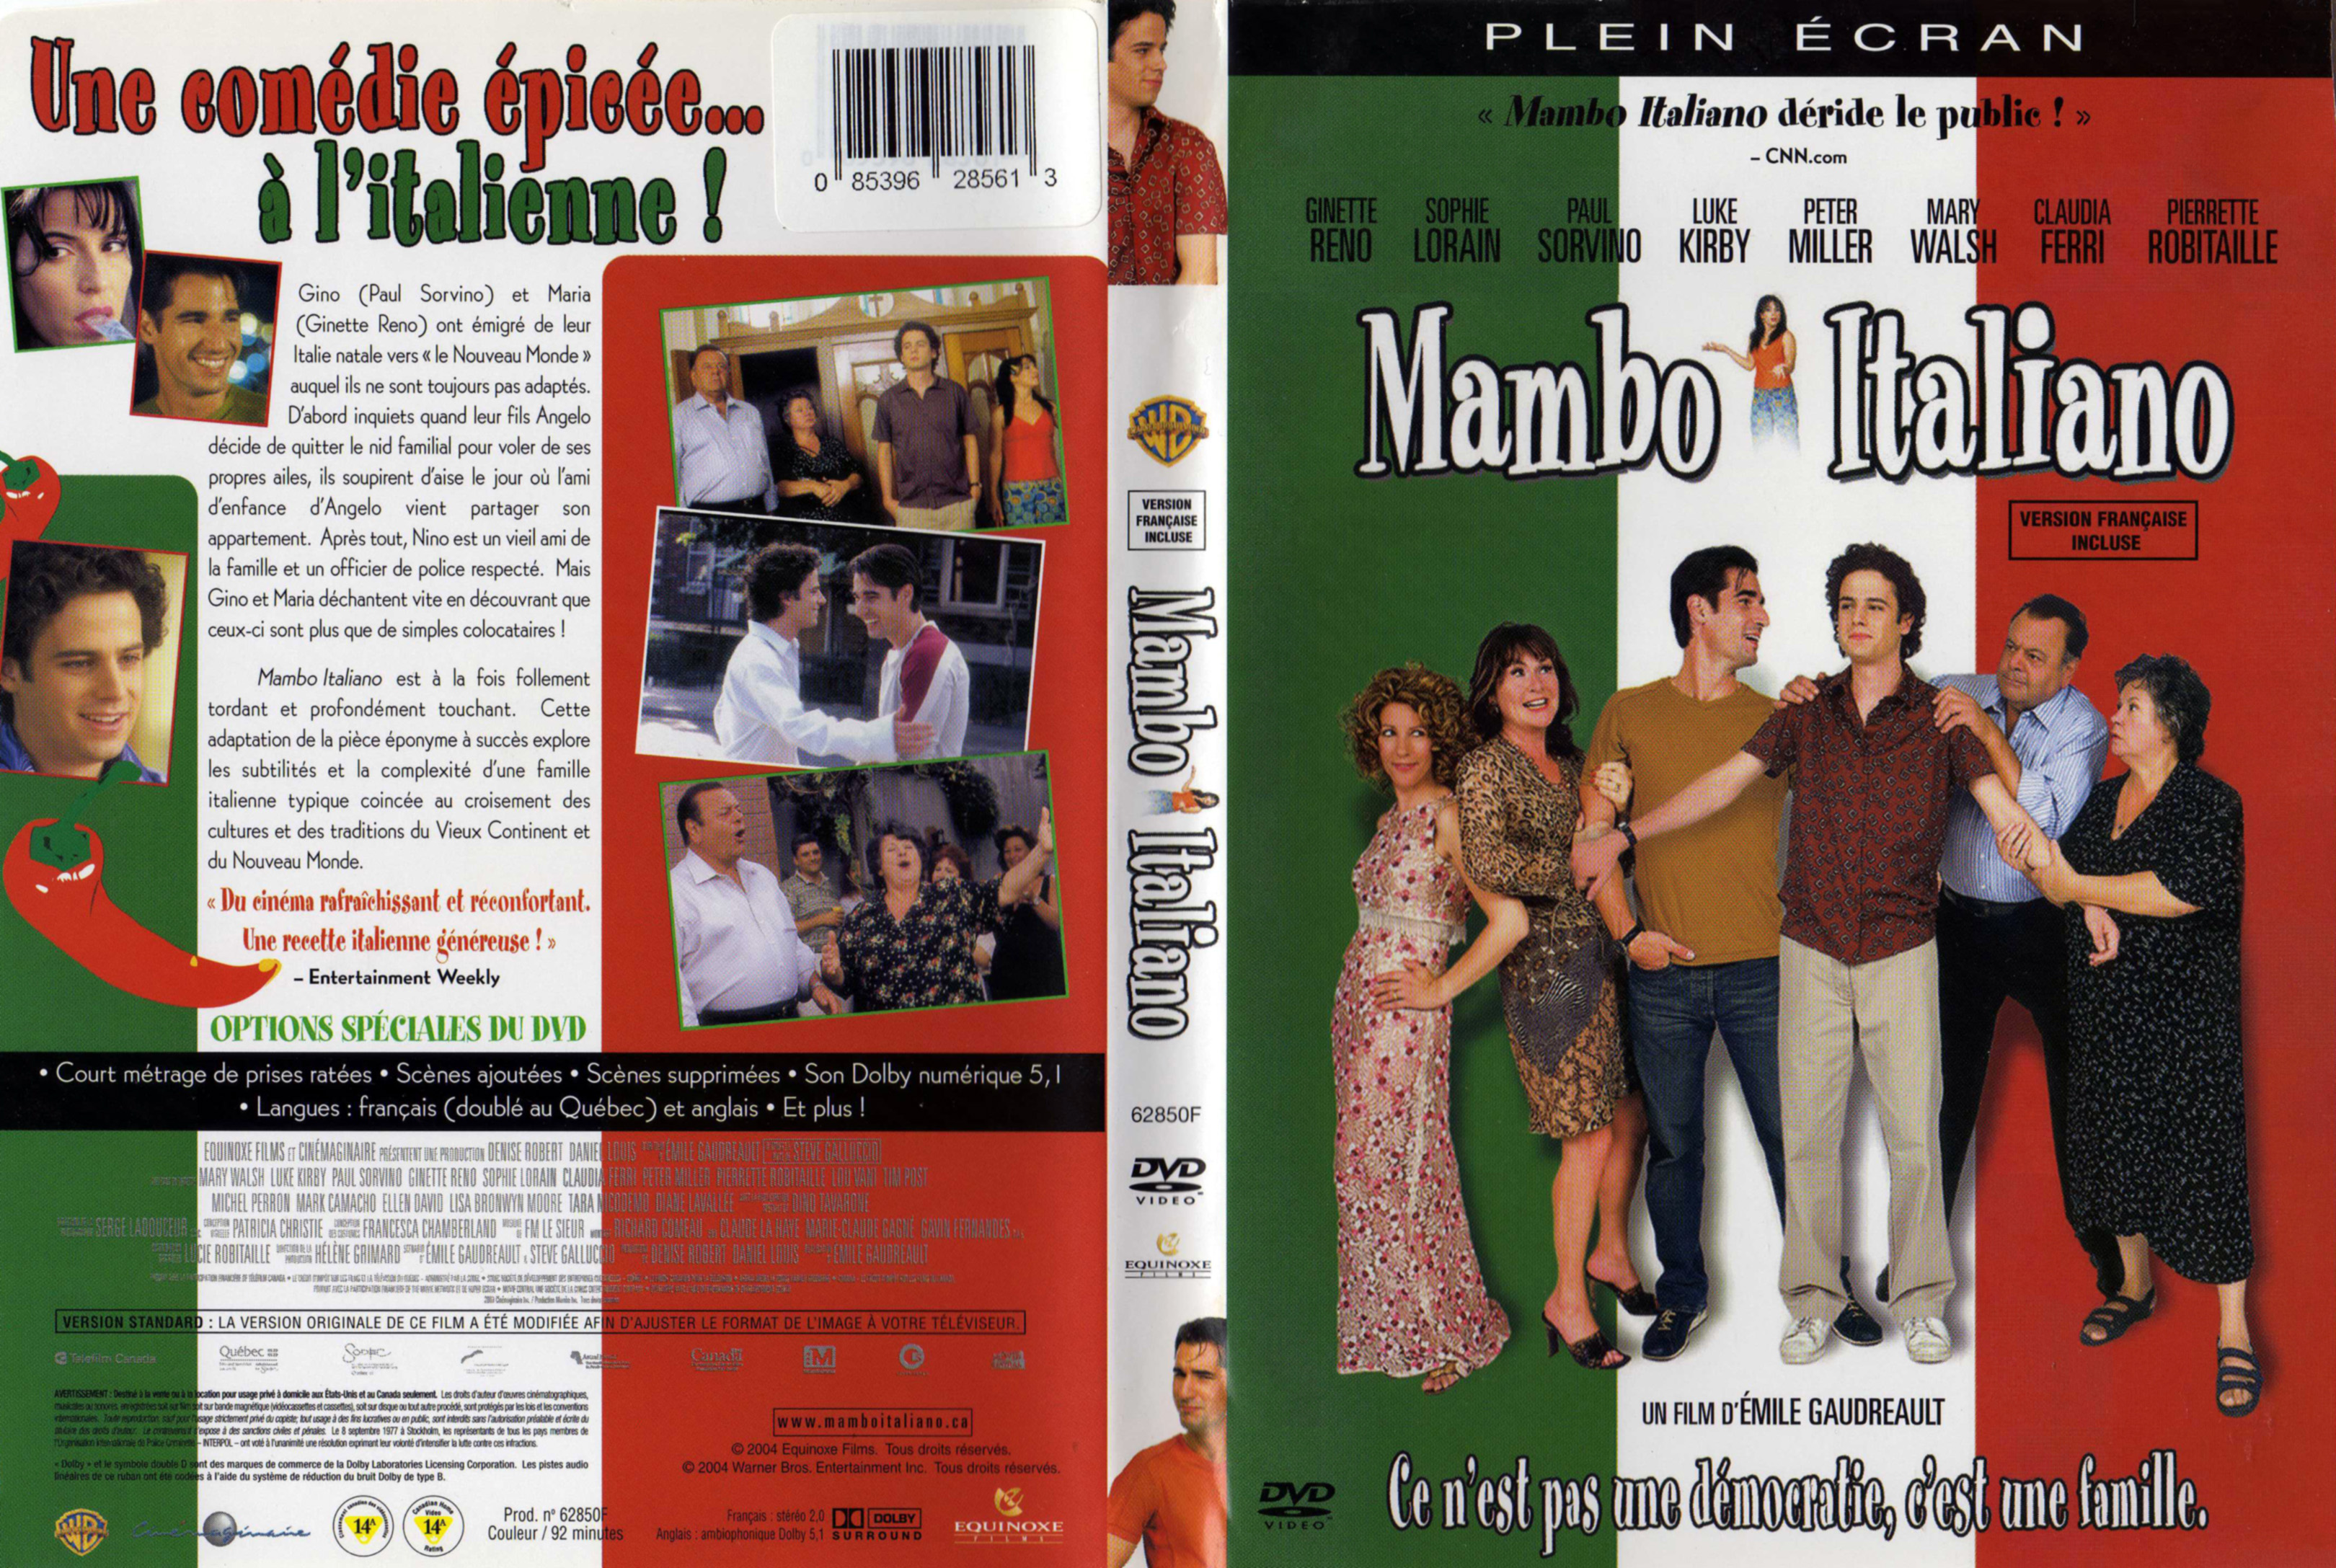 Jaquette Dvd De Mambo Italiano V2 Cinéma Passion